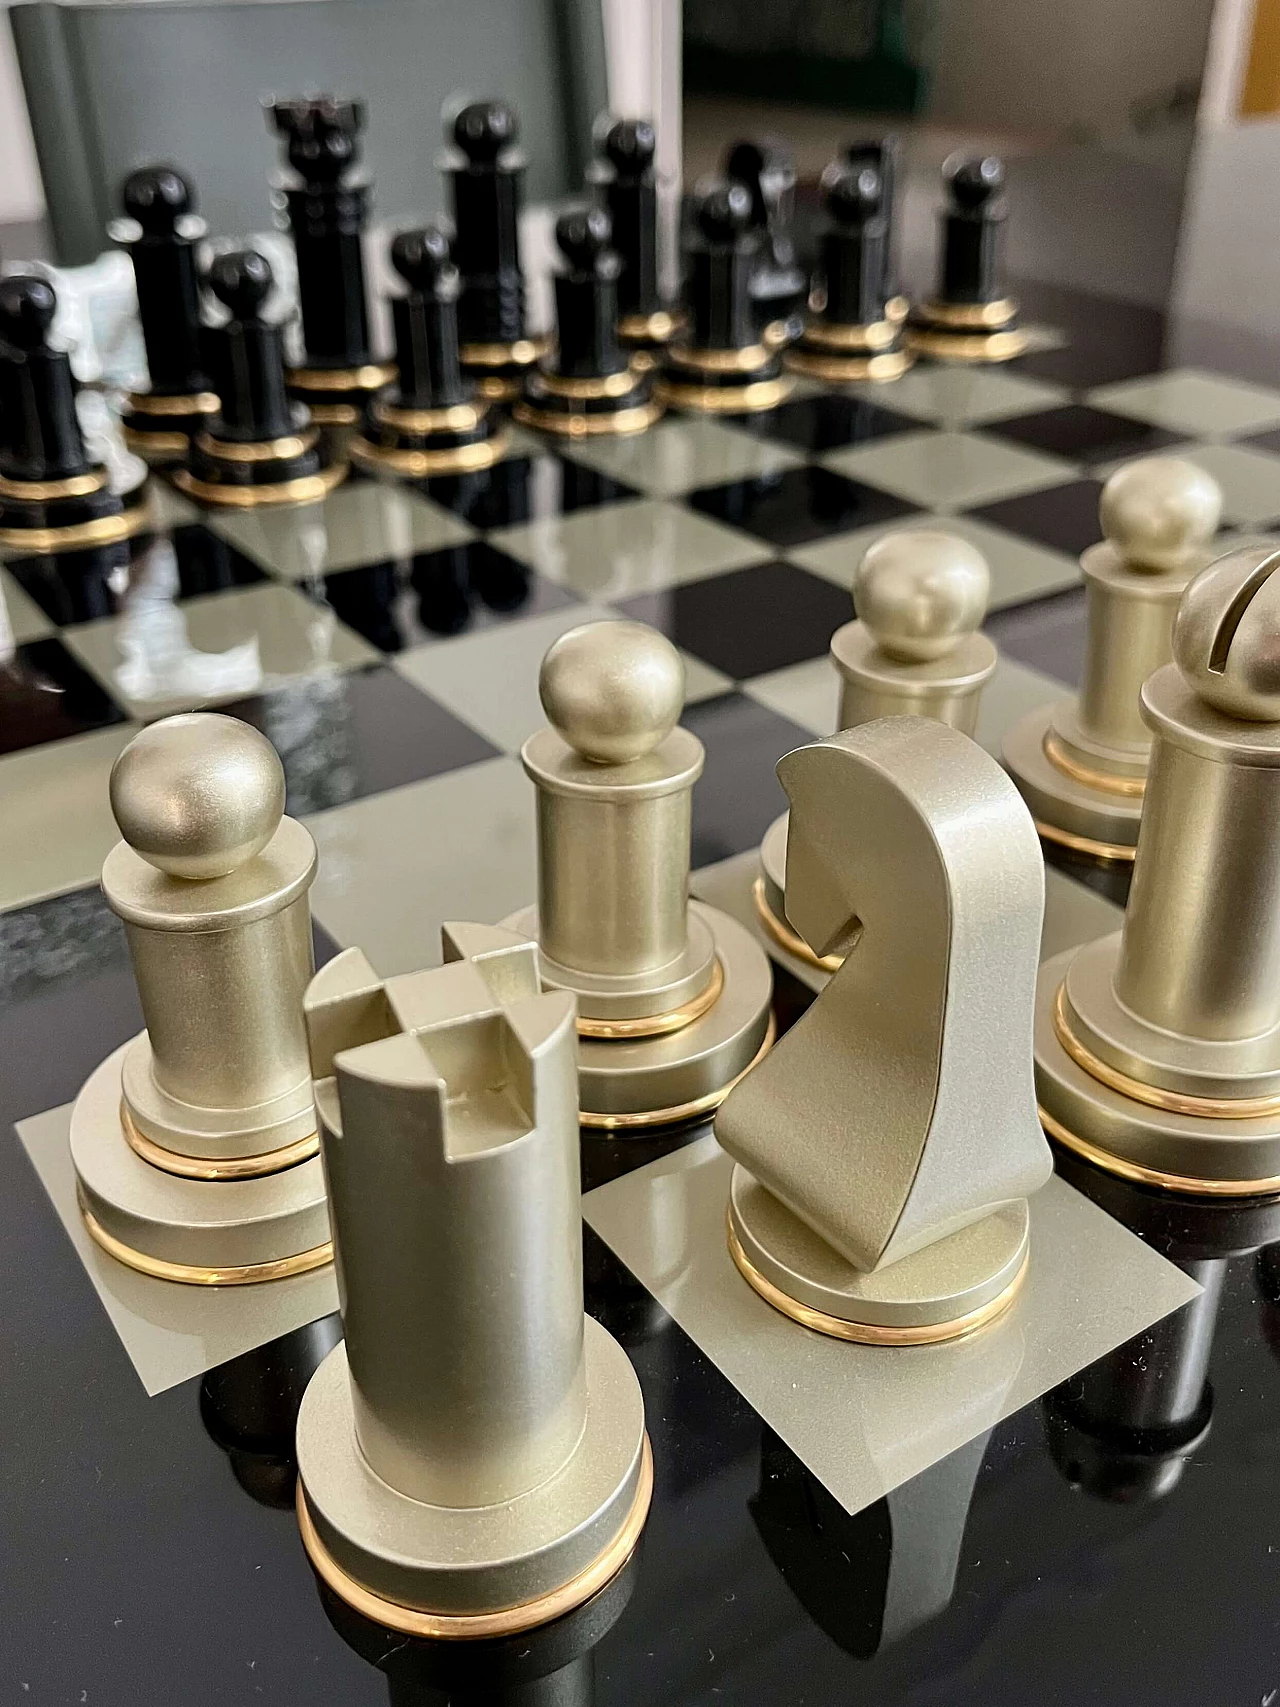 Fair chessboard by Armani Casa 2